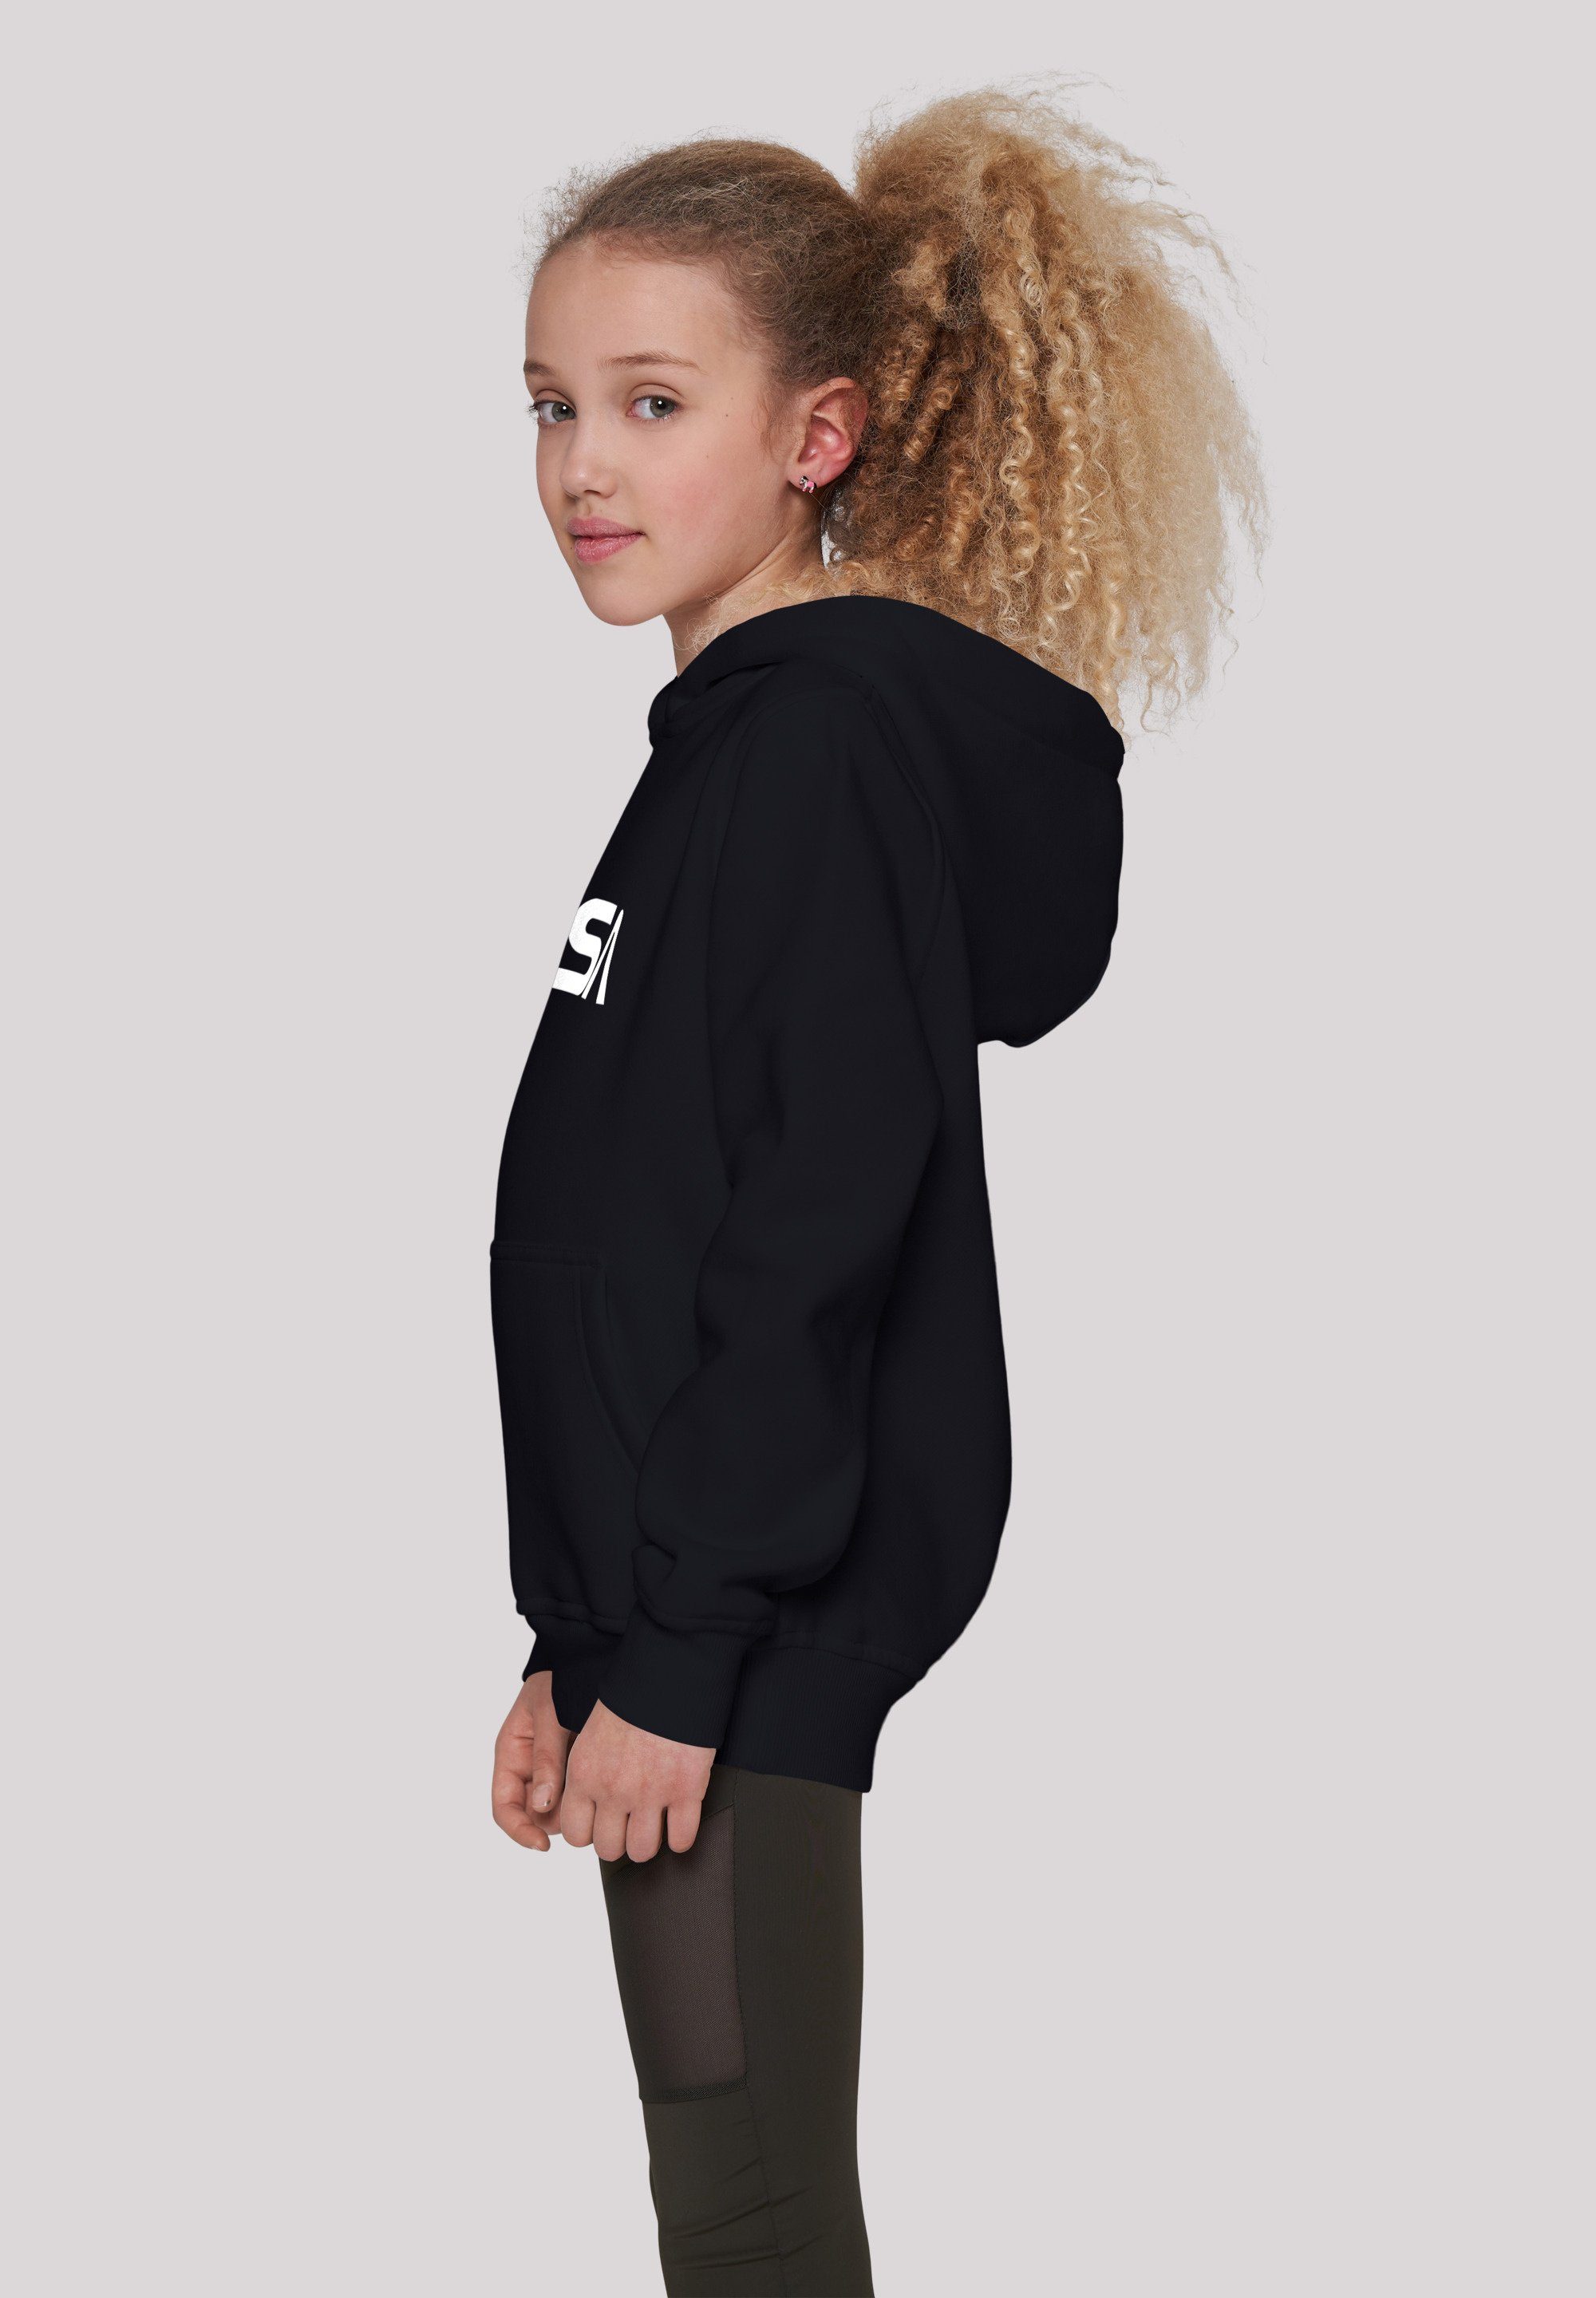 Black Modern Unisex Kinder,Premium F4NT4STIC NASA Logo Sweatshirt Merch,Jungen,Mädchen,Bedruckt